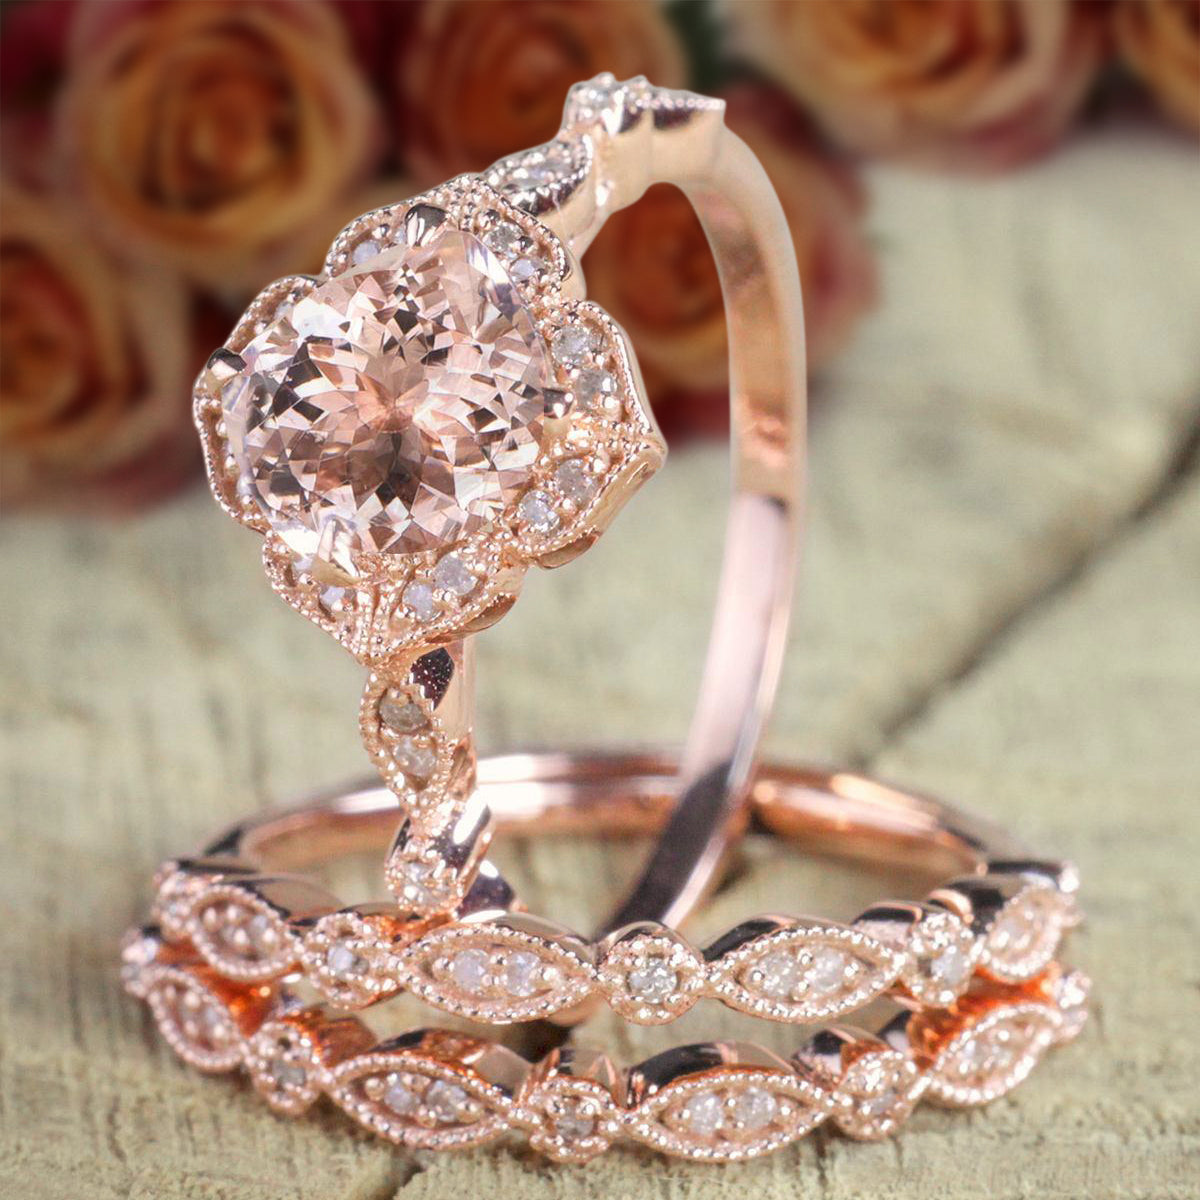 Jeen Jewels 2.25 carat Morganite Diamond Trio Bridal Ring Set 10k Rose Gold, 1 Engagement Ring 2 Wedding Bands